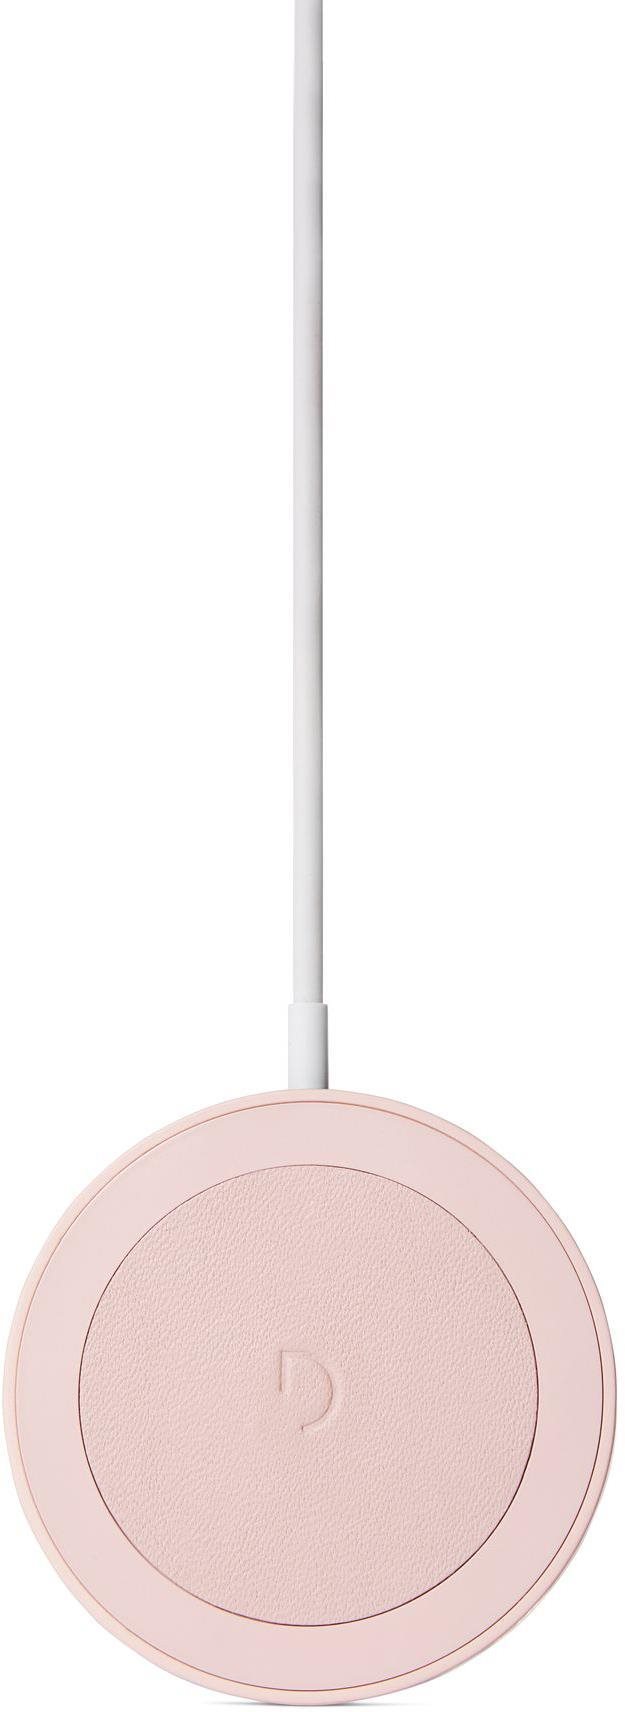 Vezeték nélküli töltő Dekódolt vezeték nélküli töltőkorong 15W rózsaszín